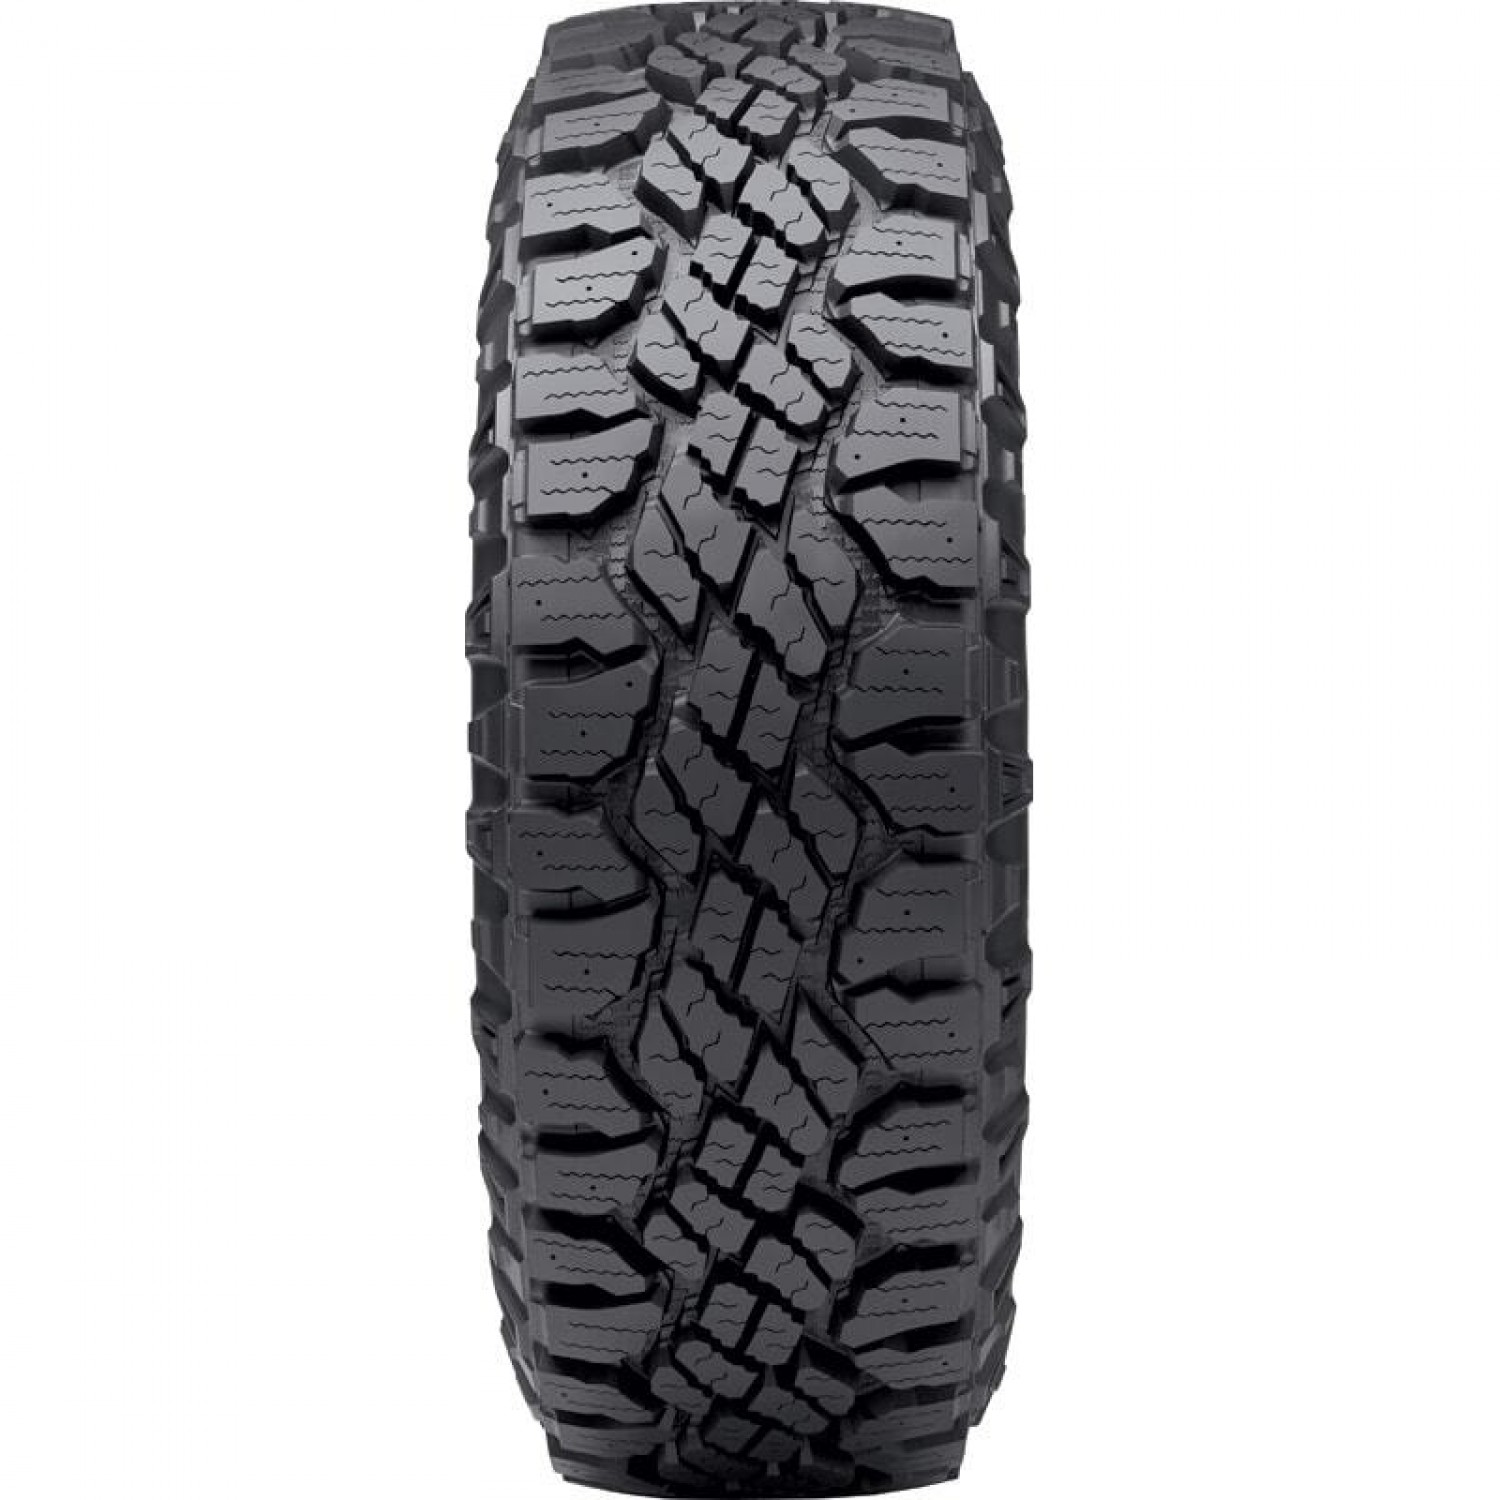 Goodyear Wrangler DuraTrac Black Sidewall Tire (LT305/55R20 121Q) vzn121166